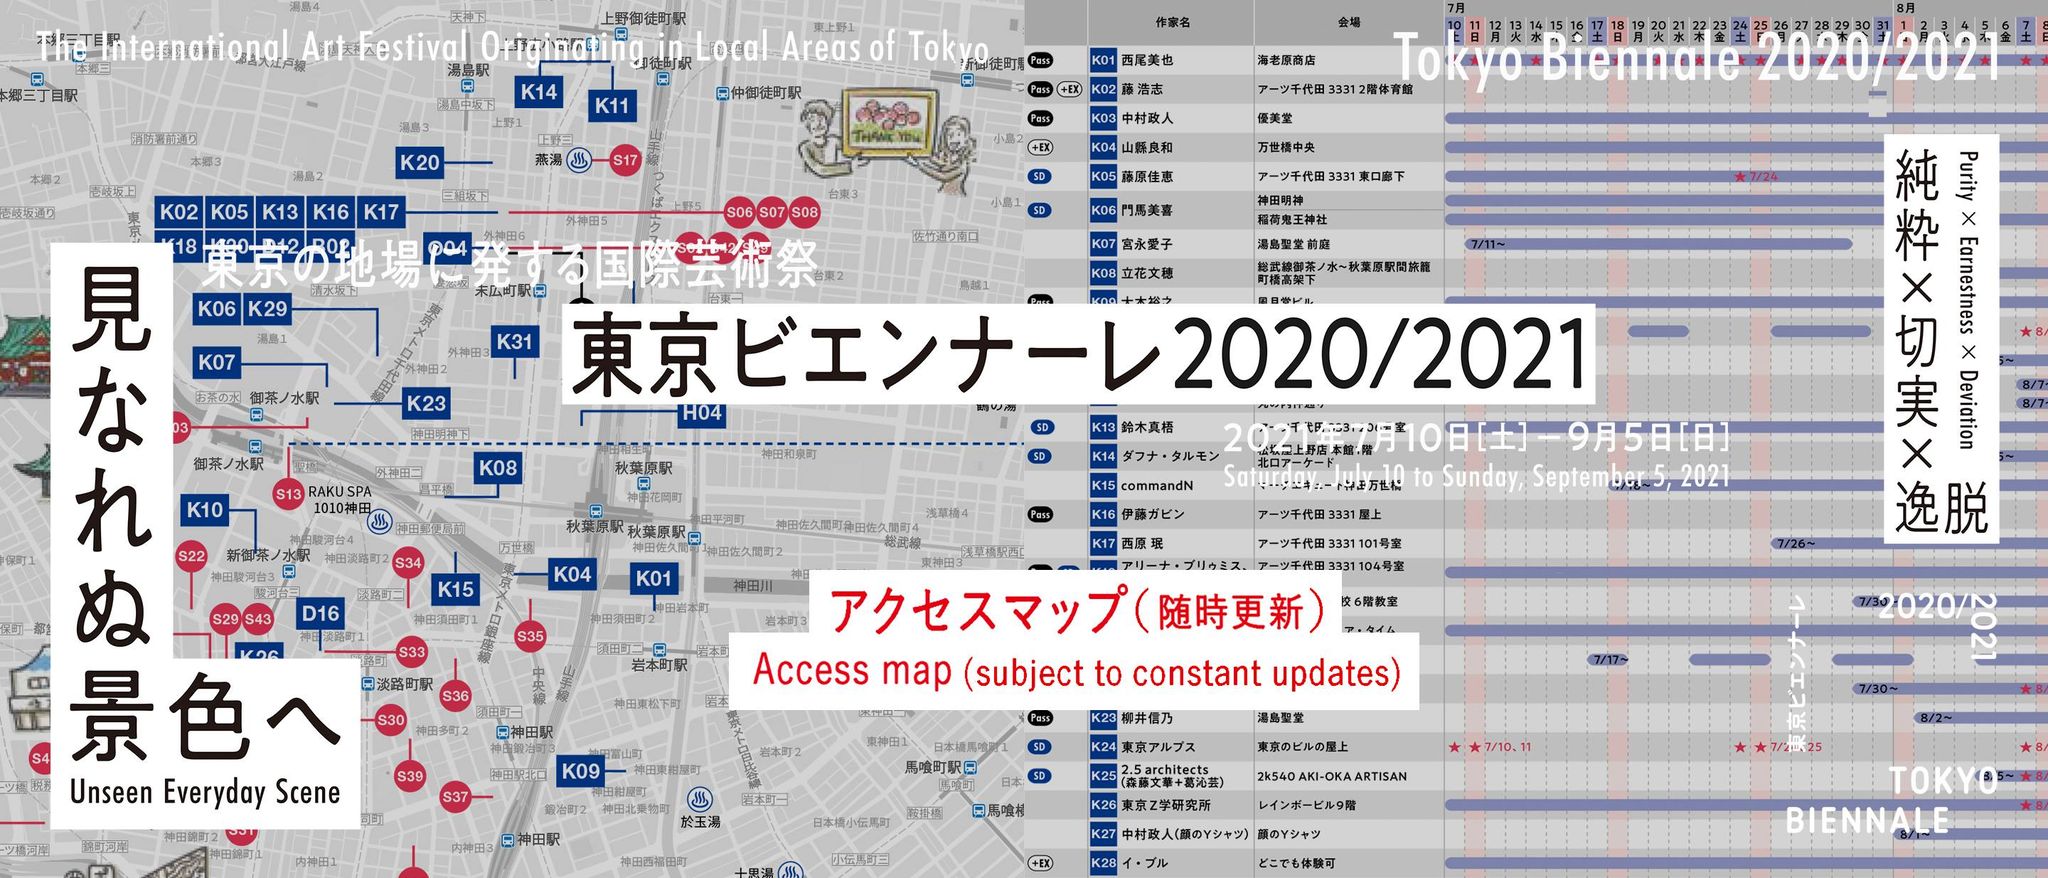 東京ビエンナーレ2020/2021｜アクセスマップのご案内